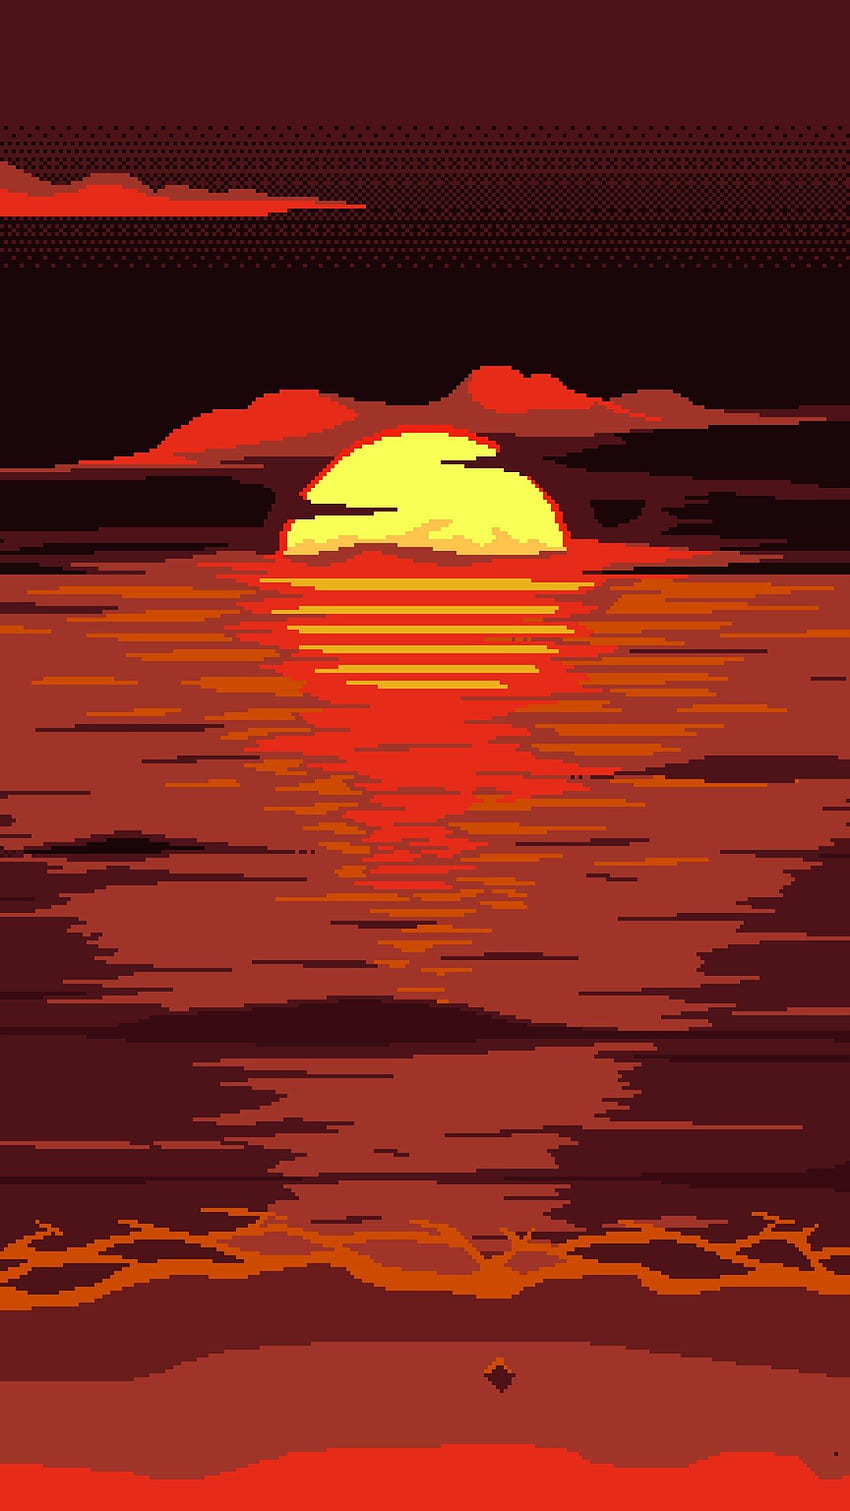 Hình nền pixel art đỏ mặt trời khiến bạn liên tưởng đến một ngày mới đầy năng lượng và sức sống. Tông màu đỏ sáng rực rỡ sẽ cho bạn cảm giác tỉnh táo và sảng khoái. Tận hưởng những tia nắng đầu tiên của ngày mới và khởi đầu một ngày tuyệt vời với hình nền pixel art đỏ mặt trời lấp lánh.